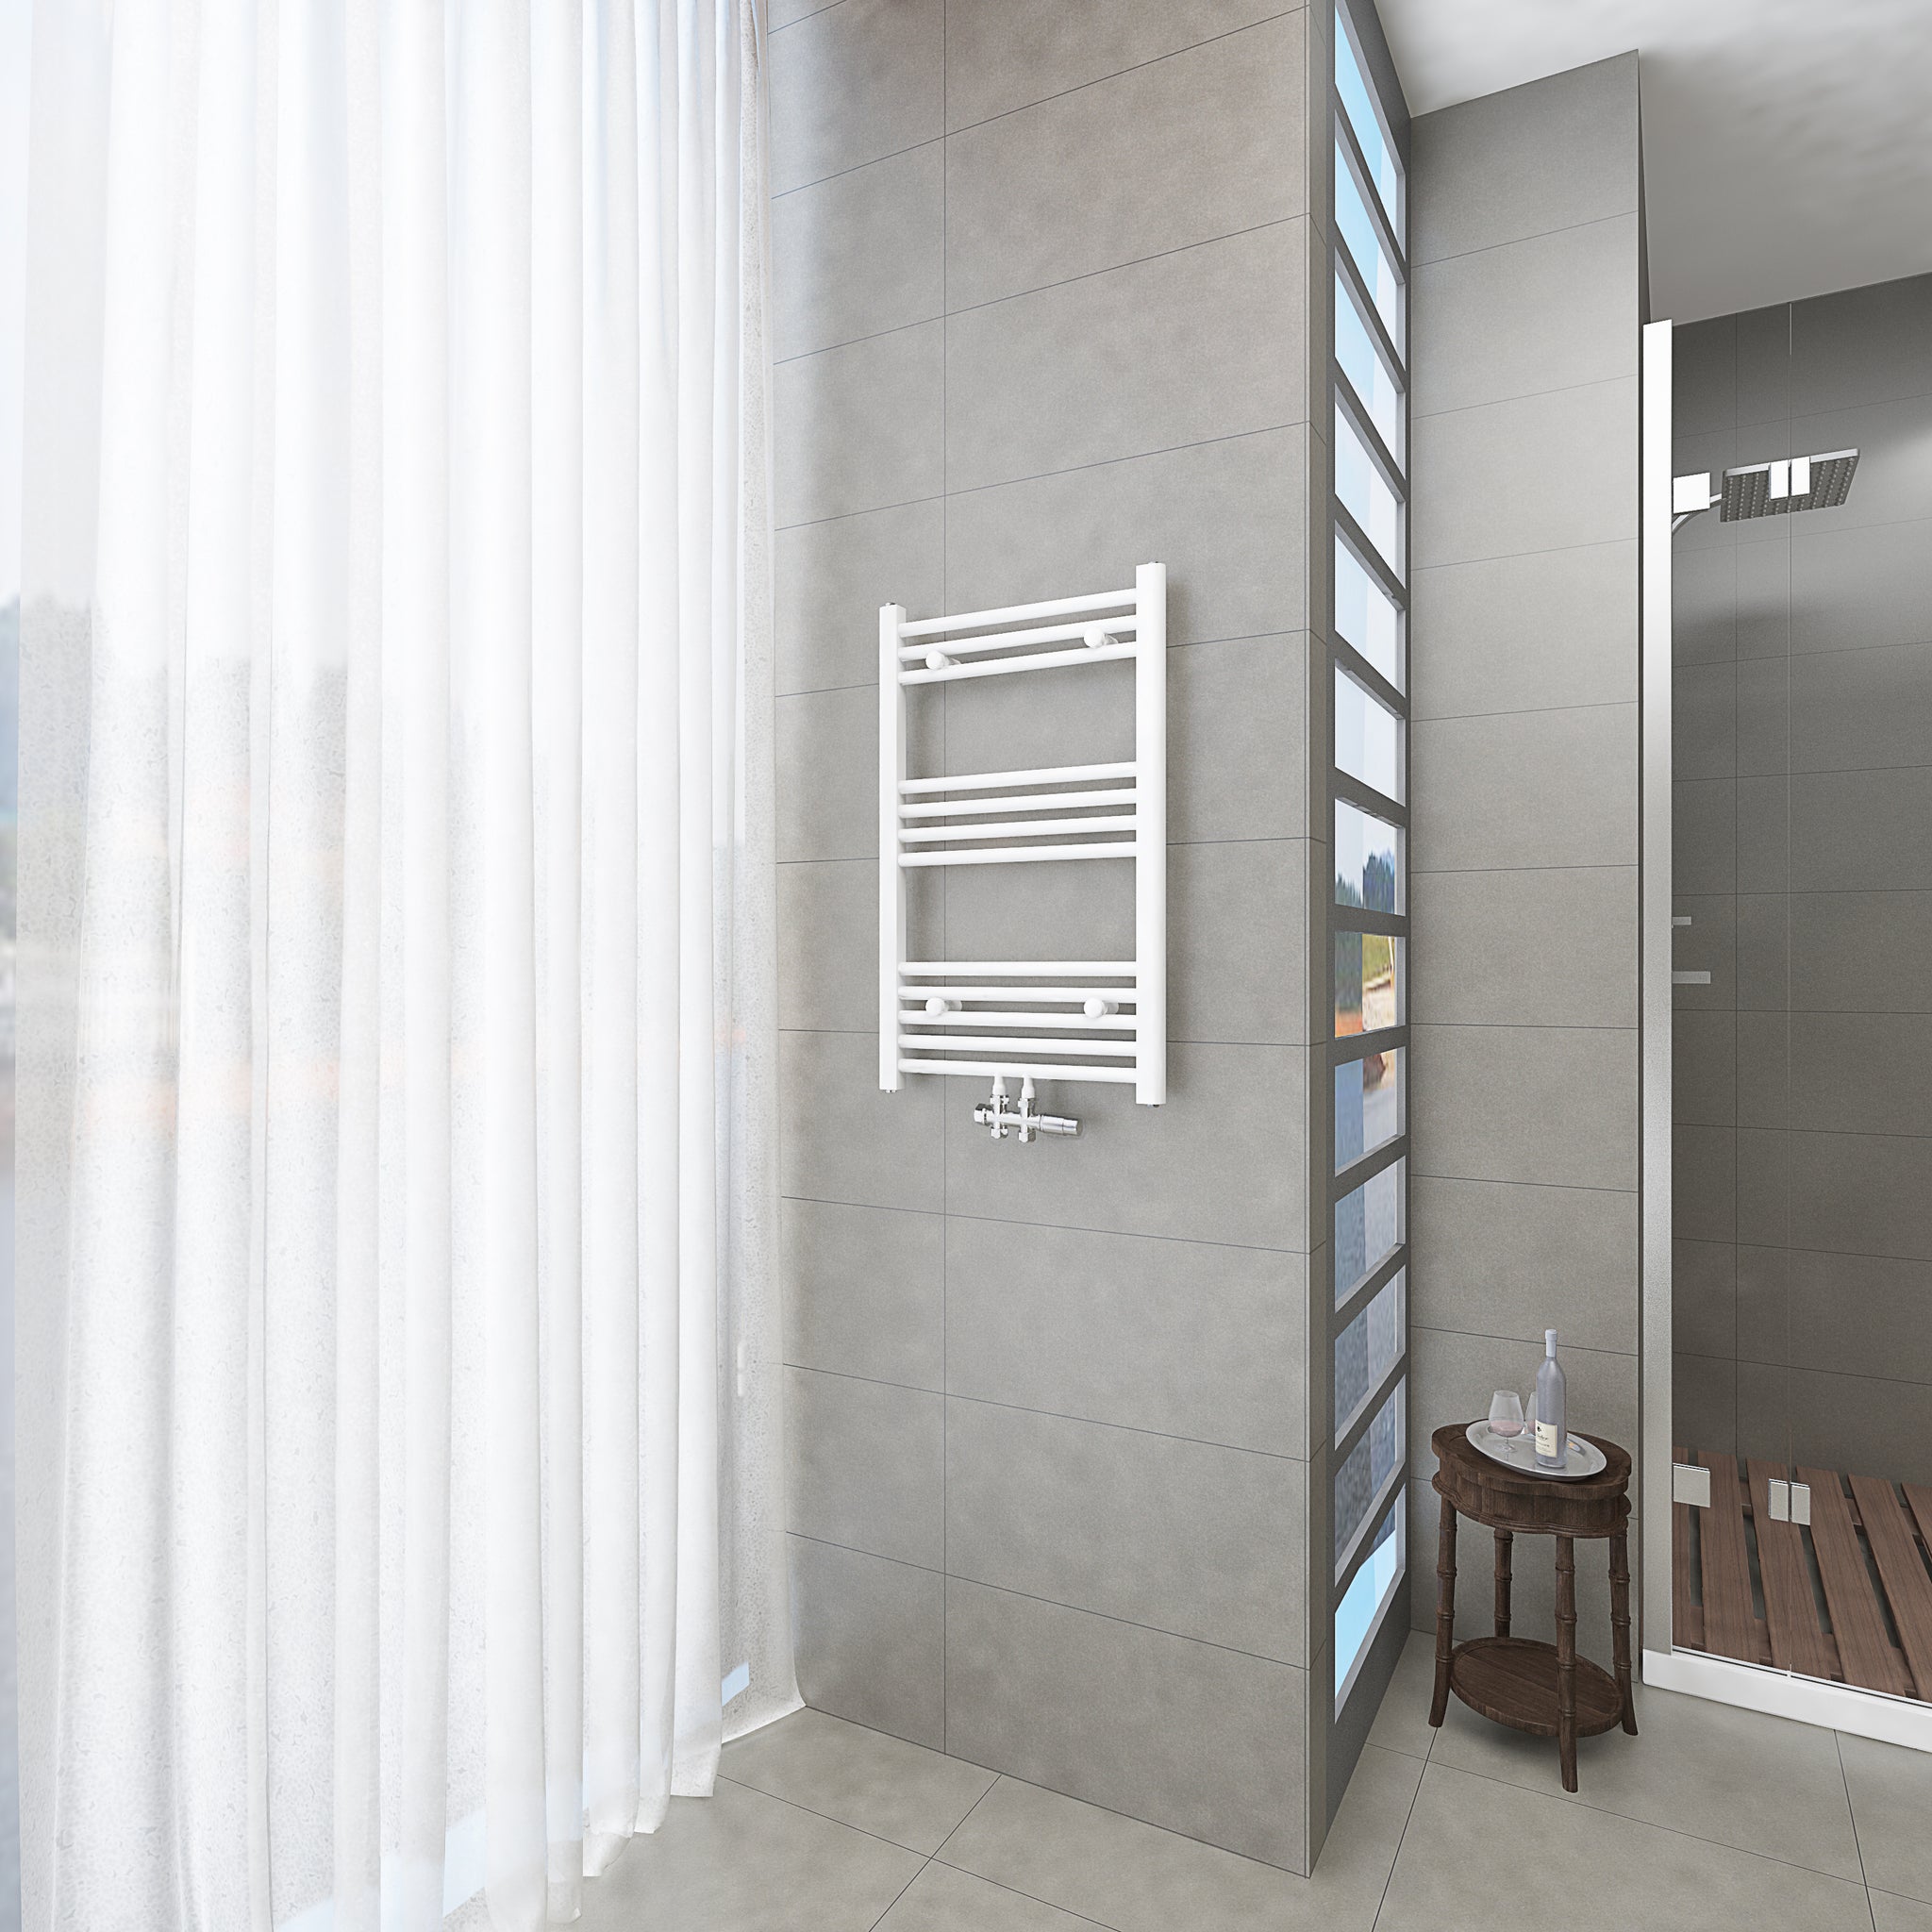 Badheizkörper Weiß - 80x50 CM Heizkörper und Handtuchtrockner in einem - Mittelanschluss - Rauchfreie Kohleheizung für das Badezimmer